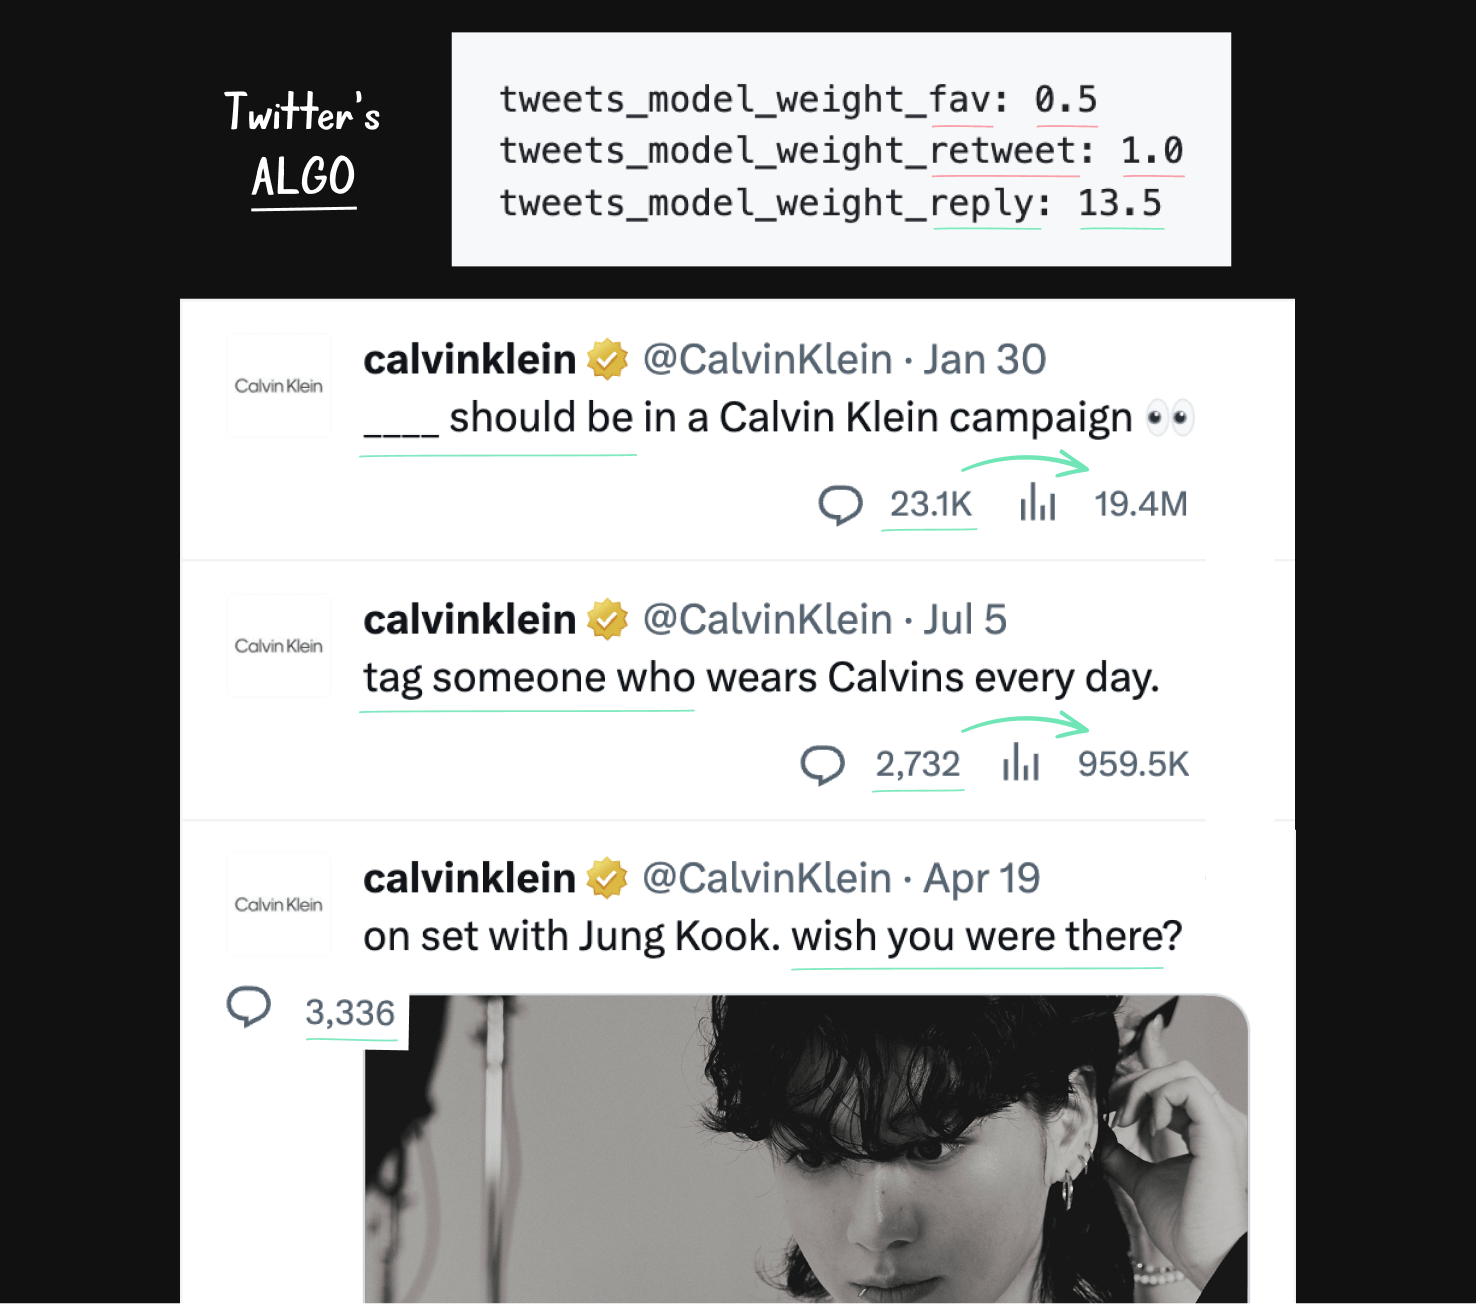 Calvin Klein's Twitter